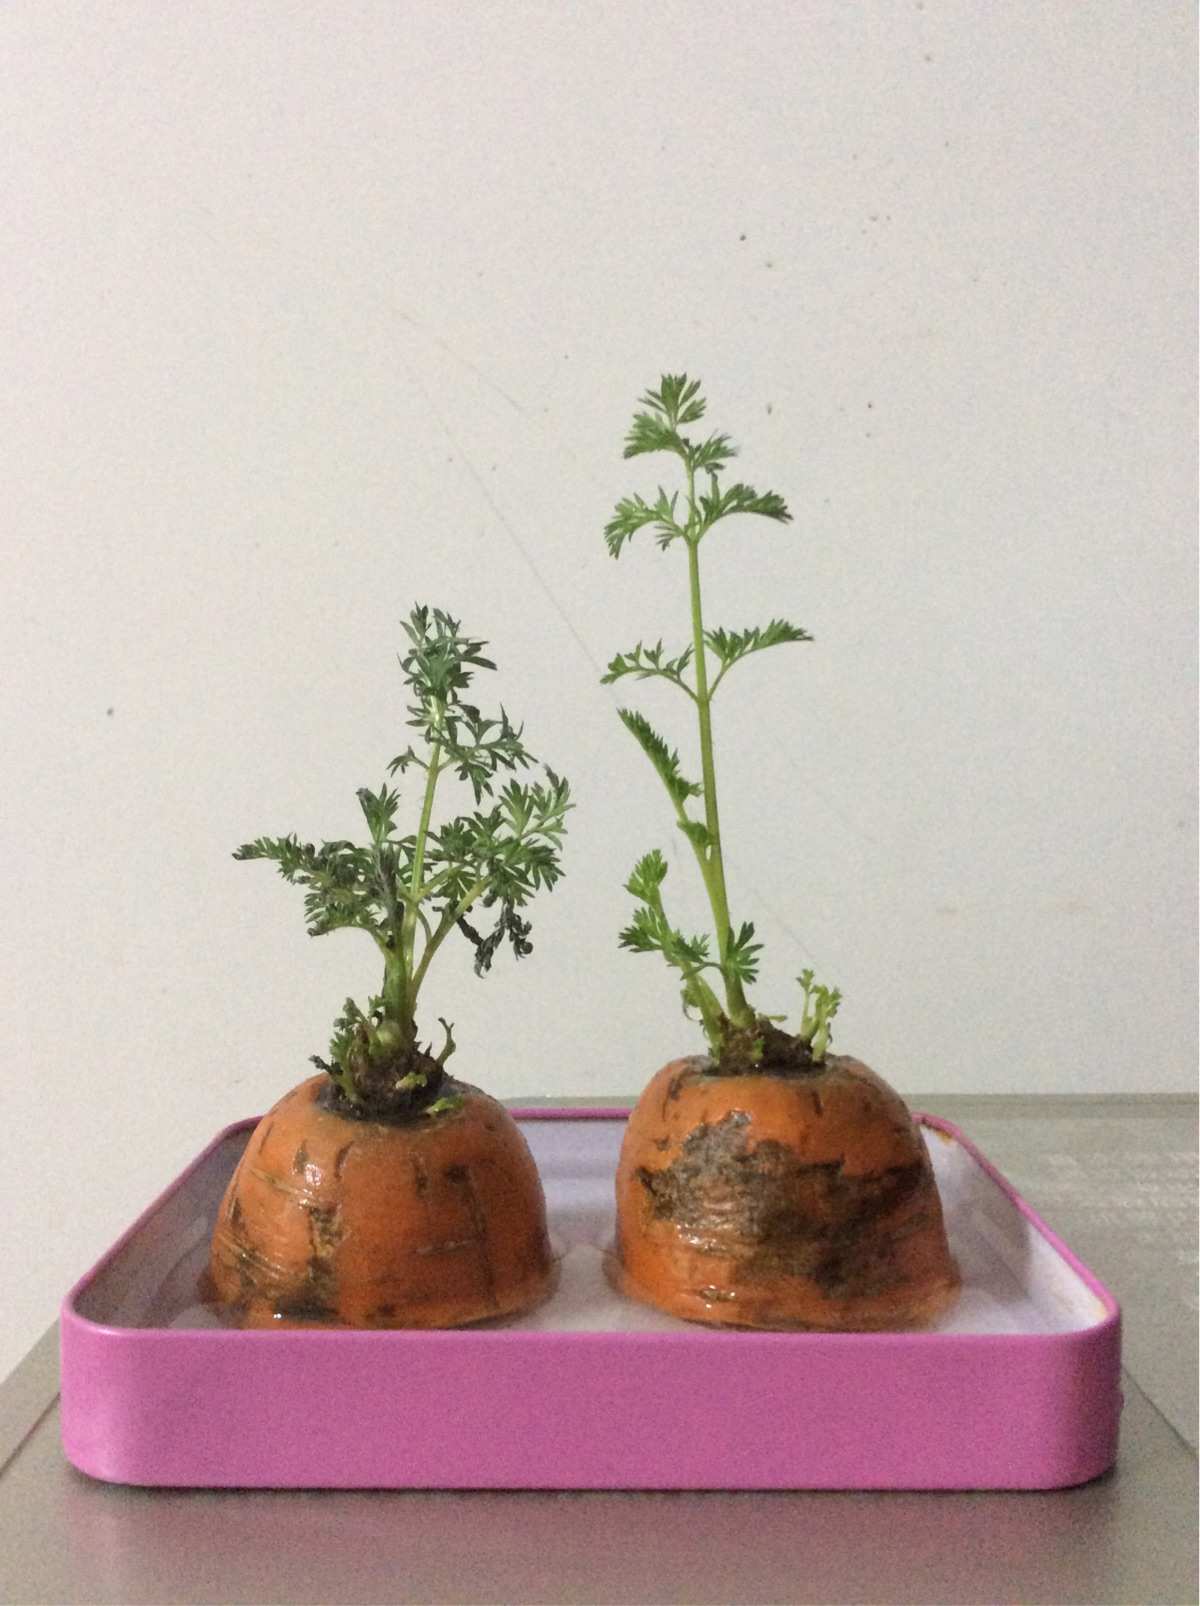 红萝卜种植时间和方法